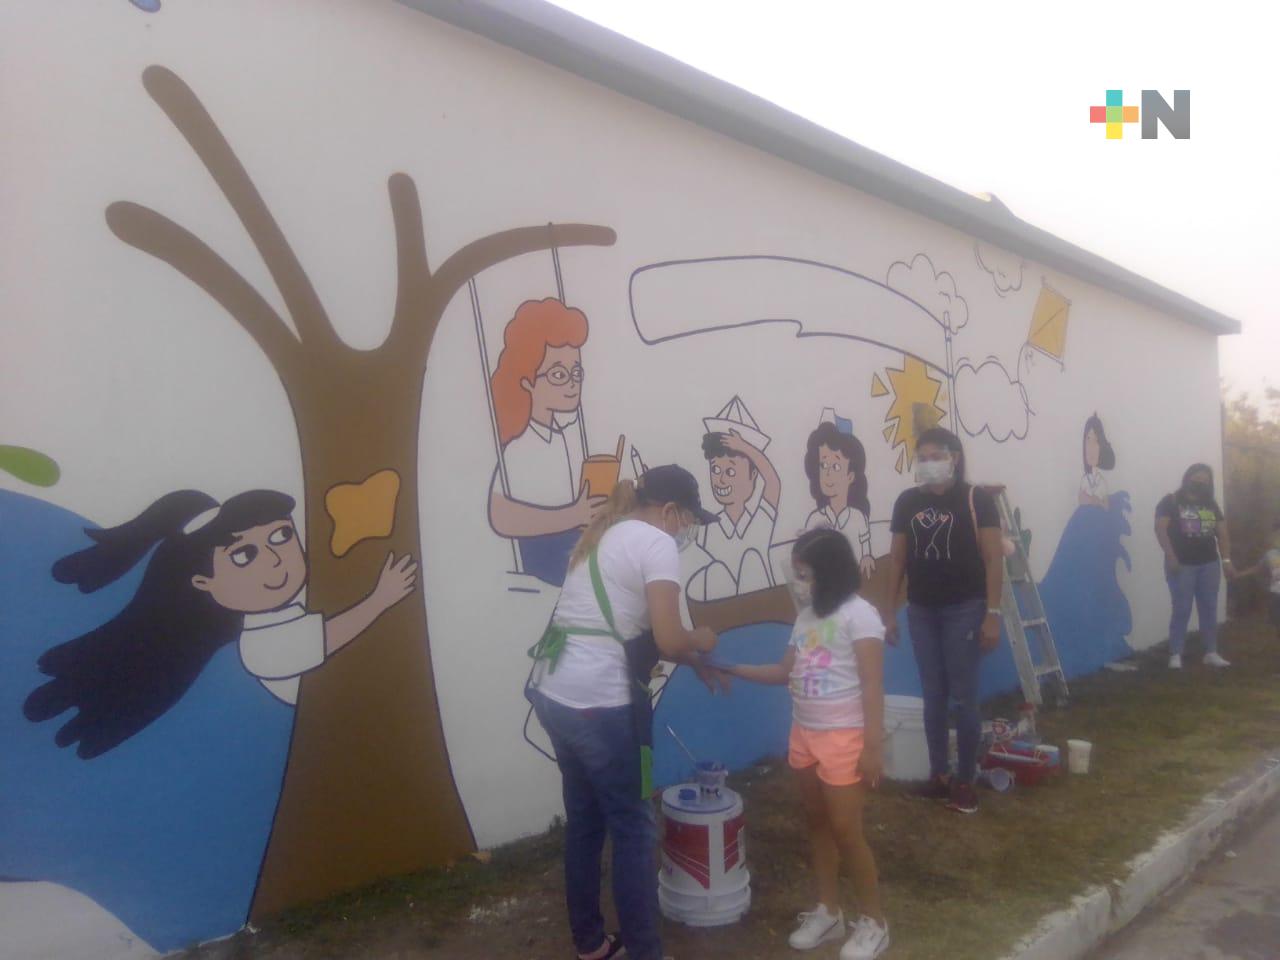 Con ganas de ver a sus amigos y regresar a clases, los alumnos de preescolar en Medellín